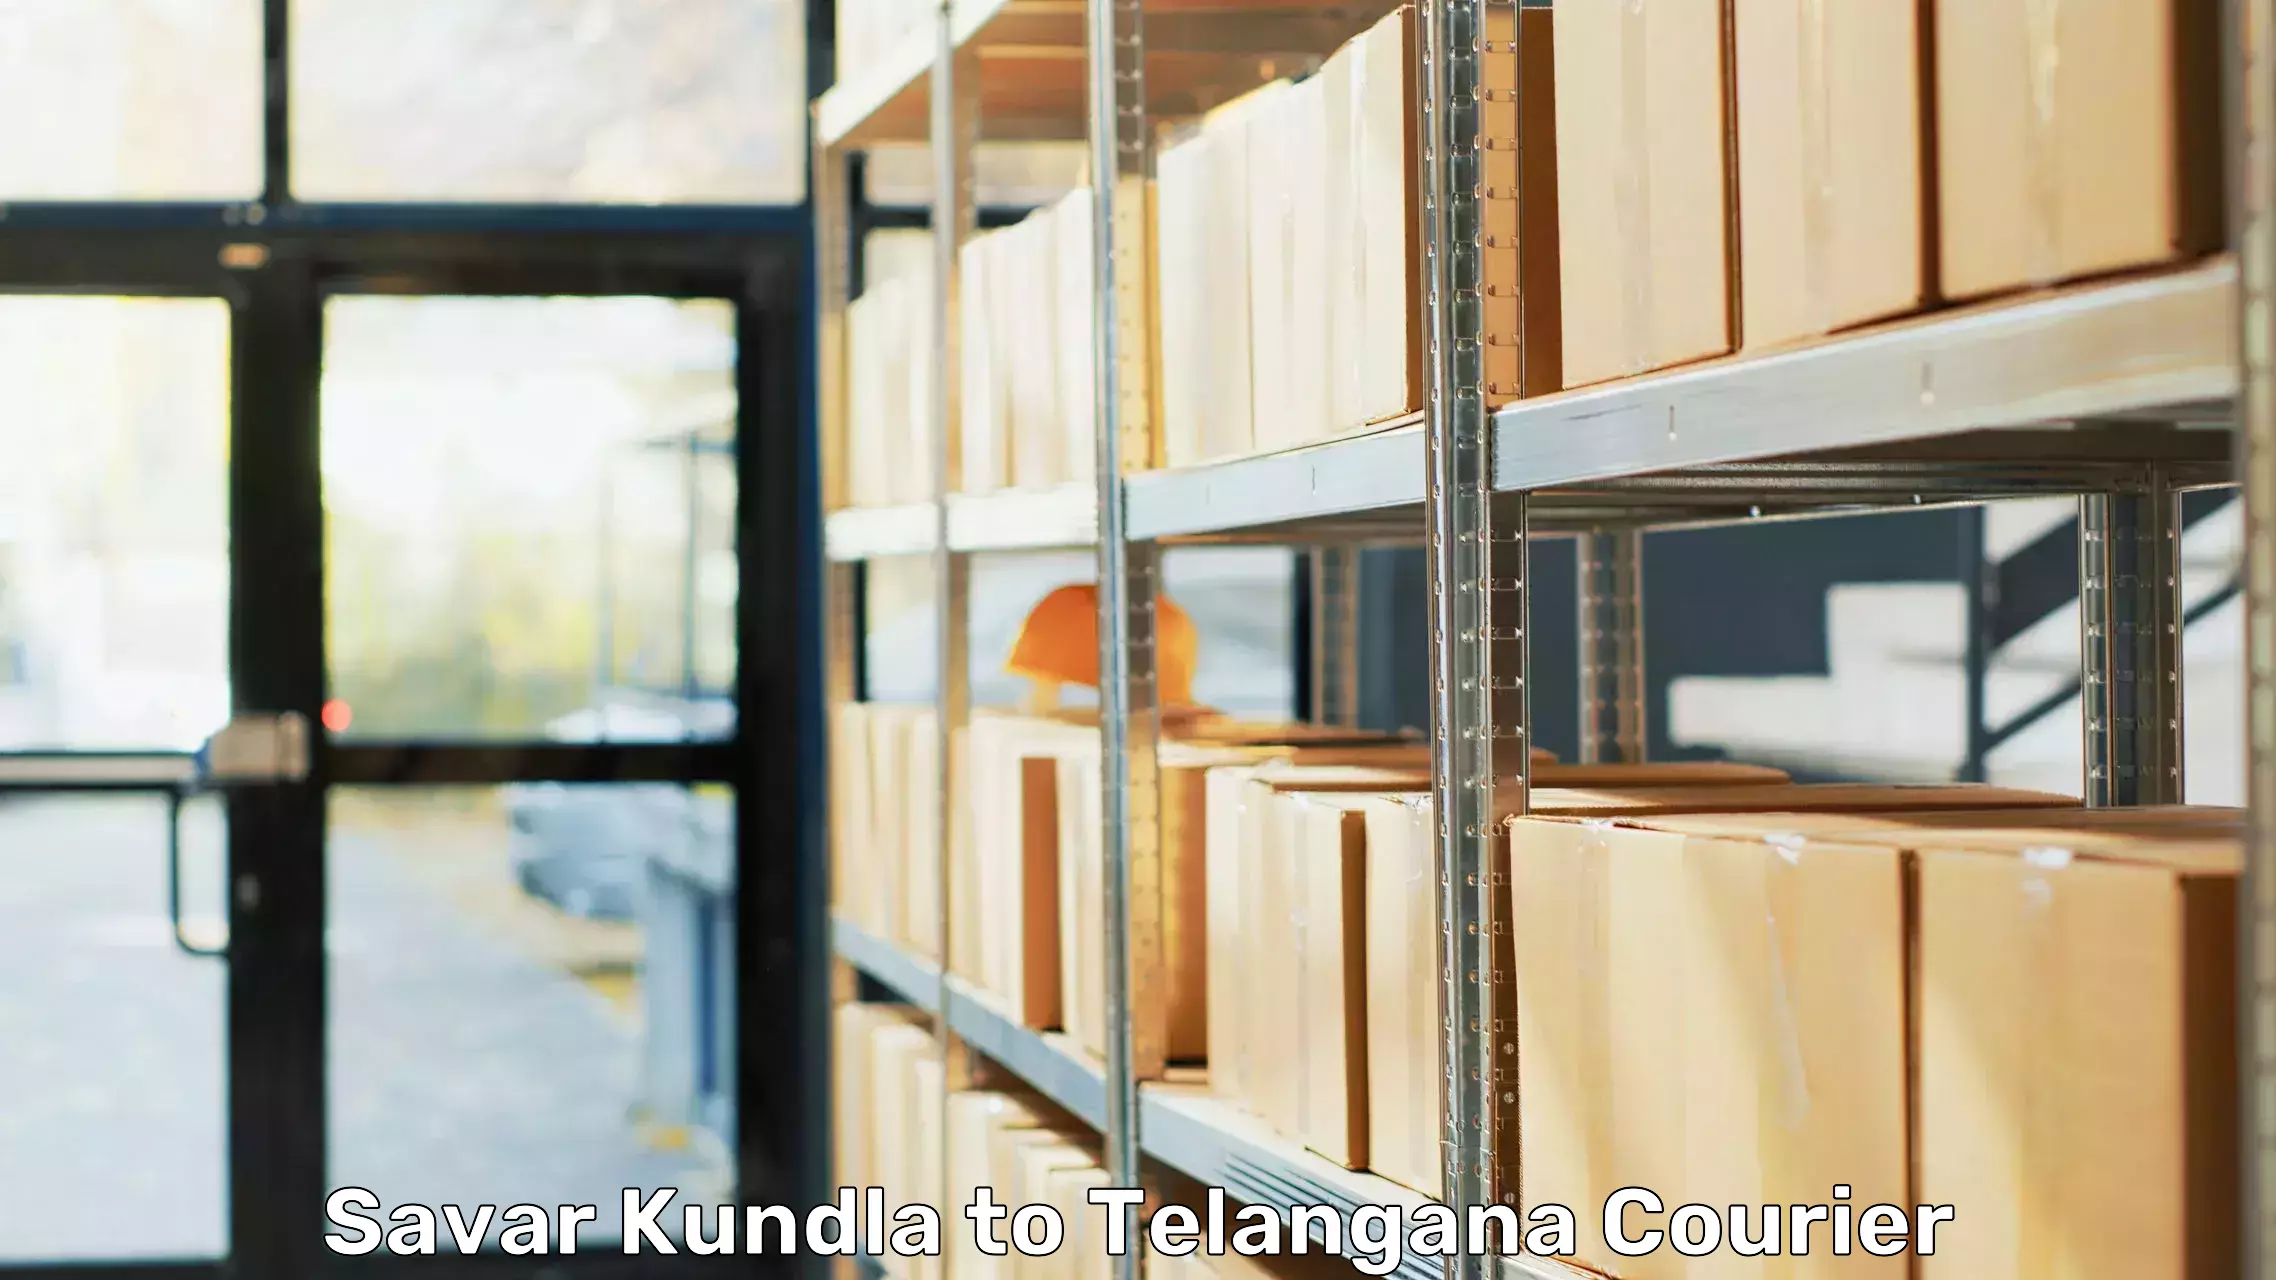 Skilled furniture transporters Savar Kundla to Shankarpalle